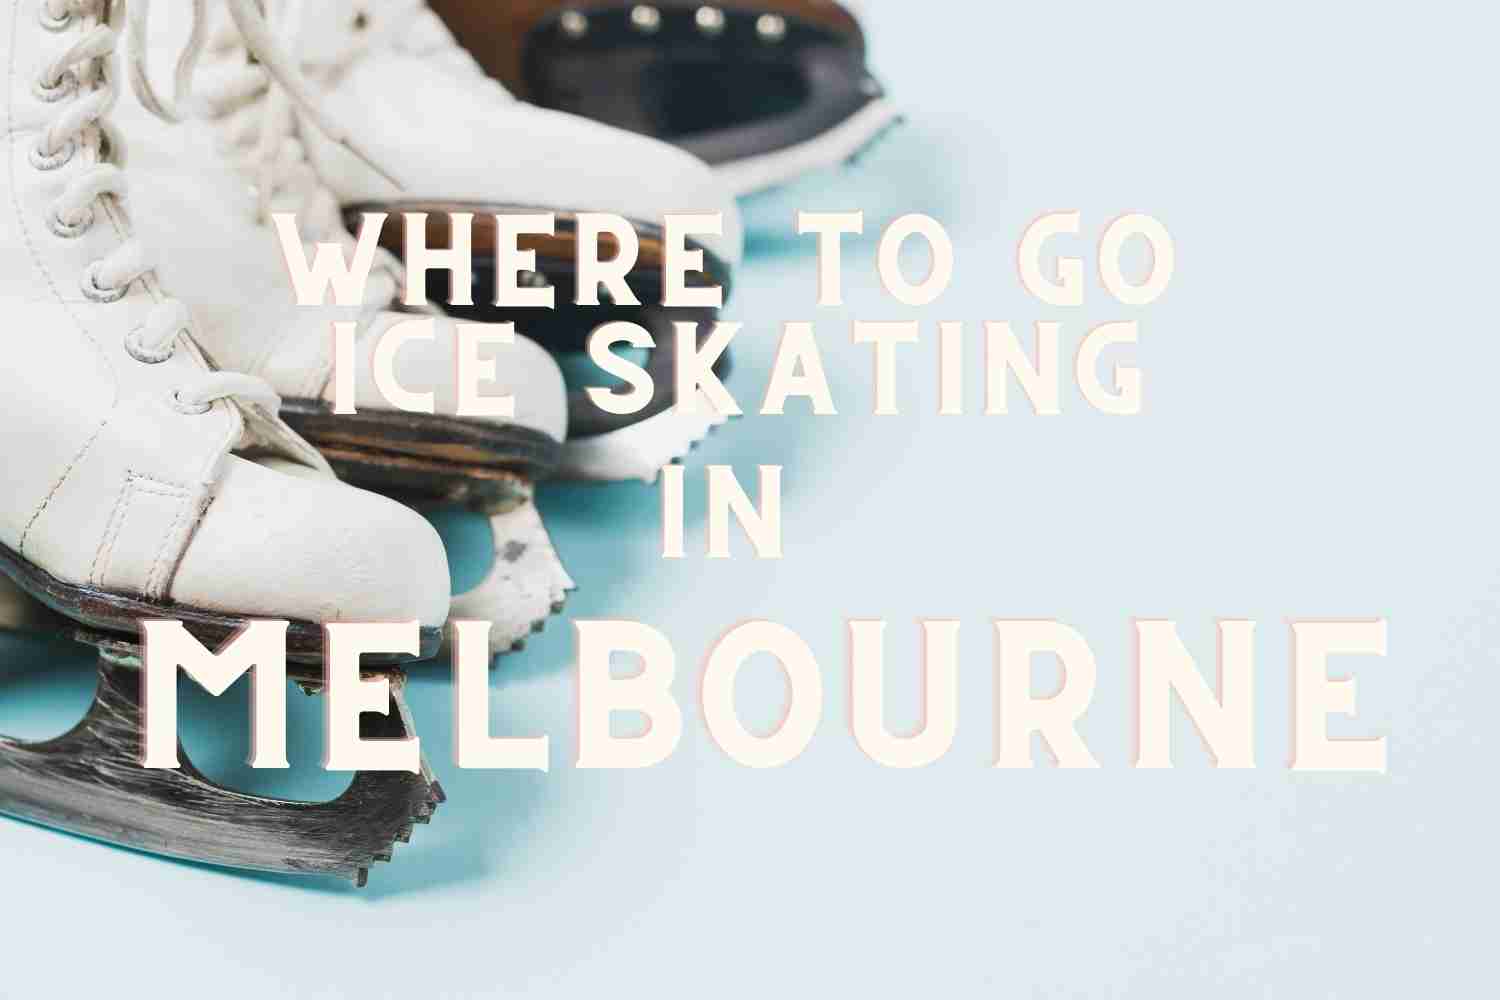 Ice skating in Melbourne